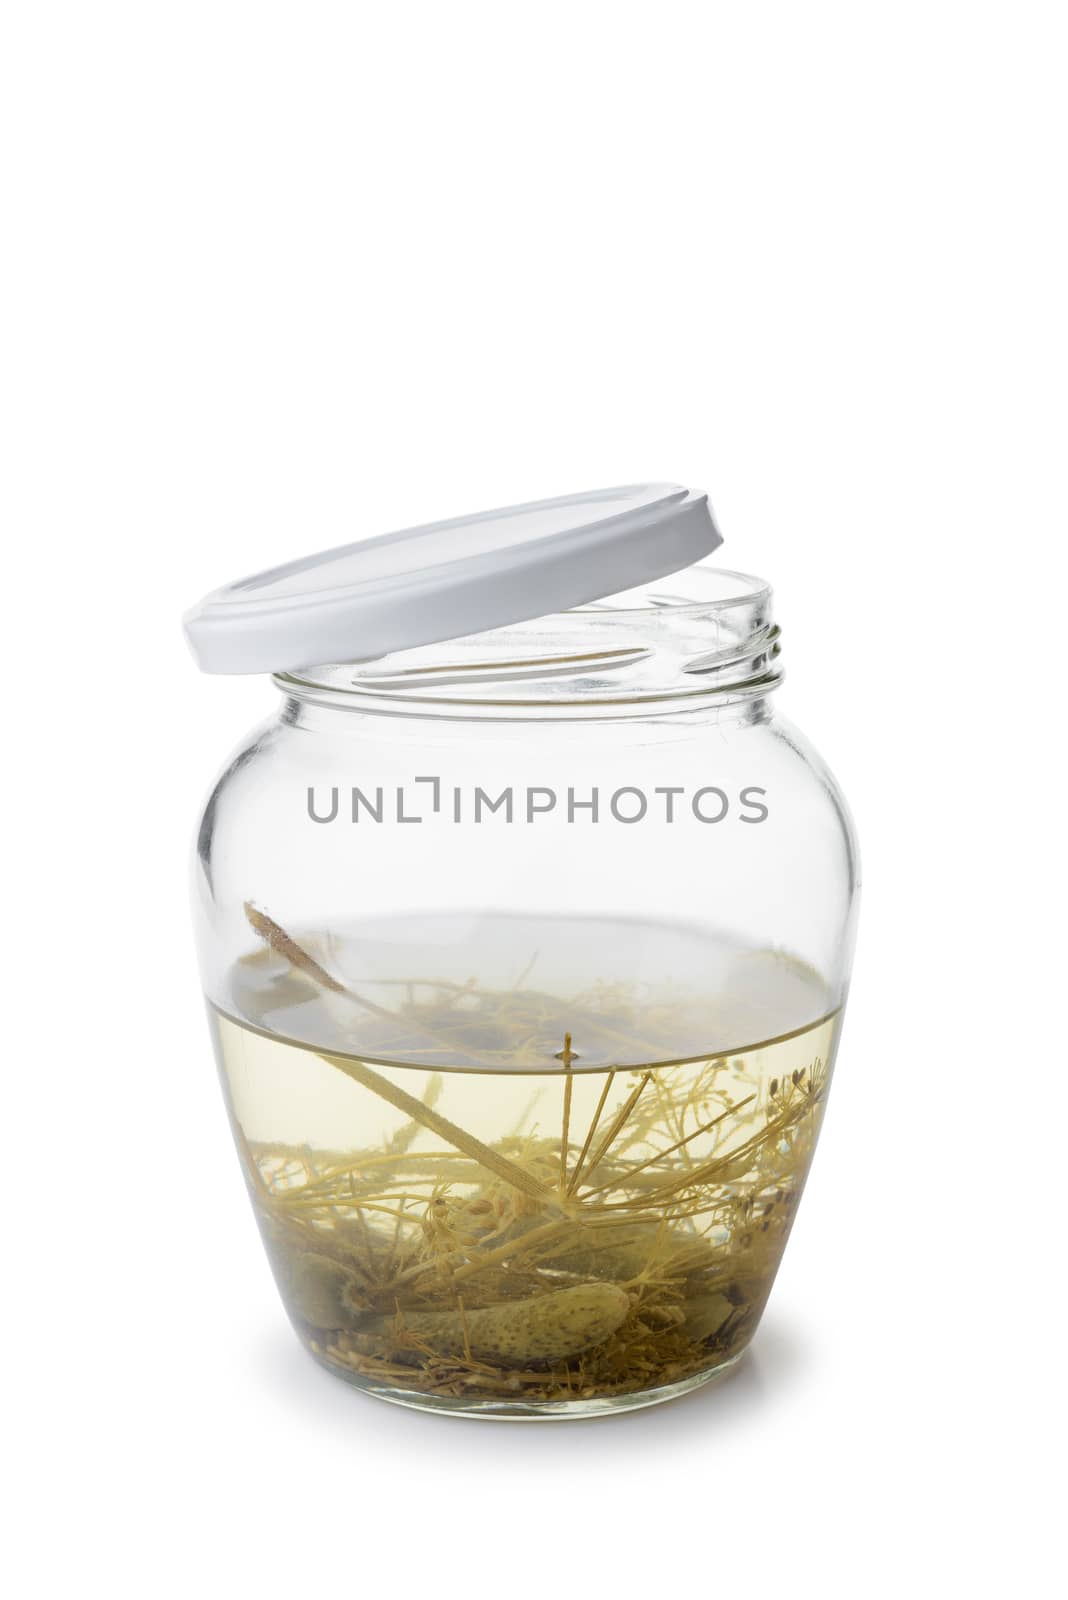 Paunchy Glass Jar with Gherkins by MaxalTamor